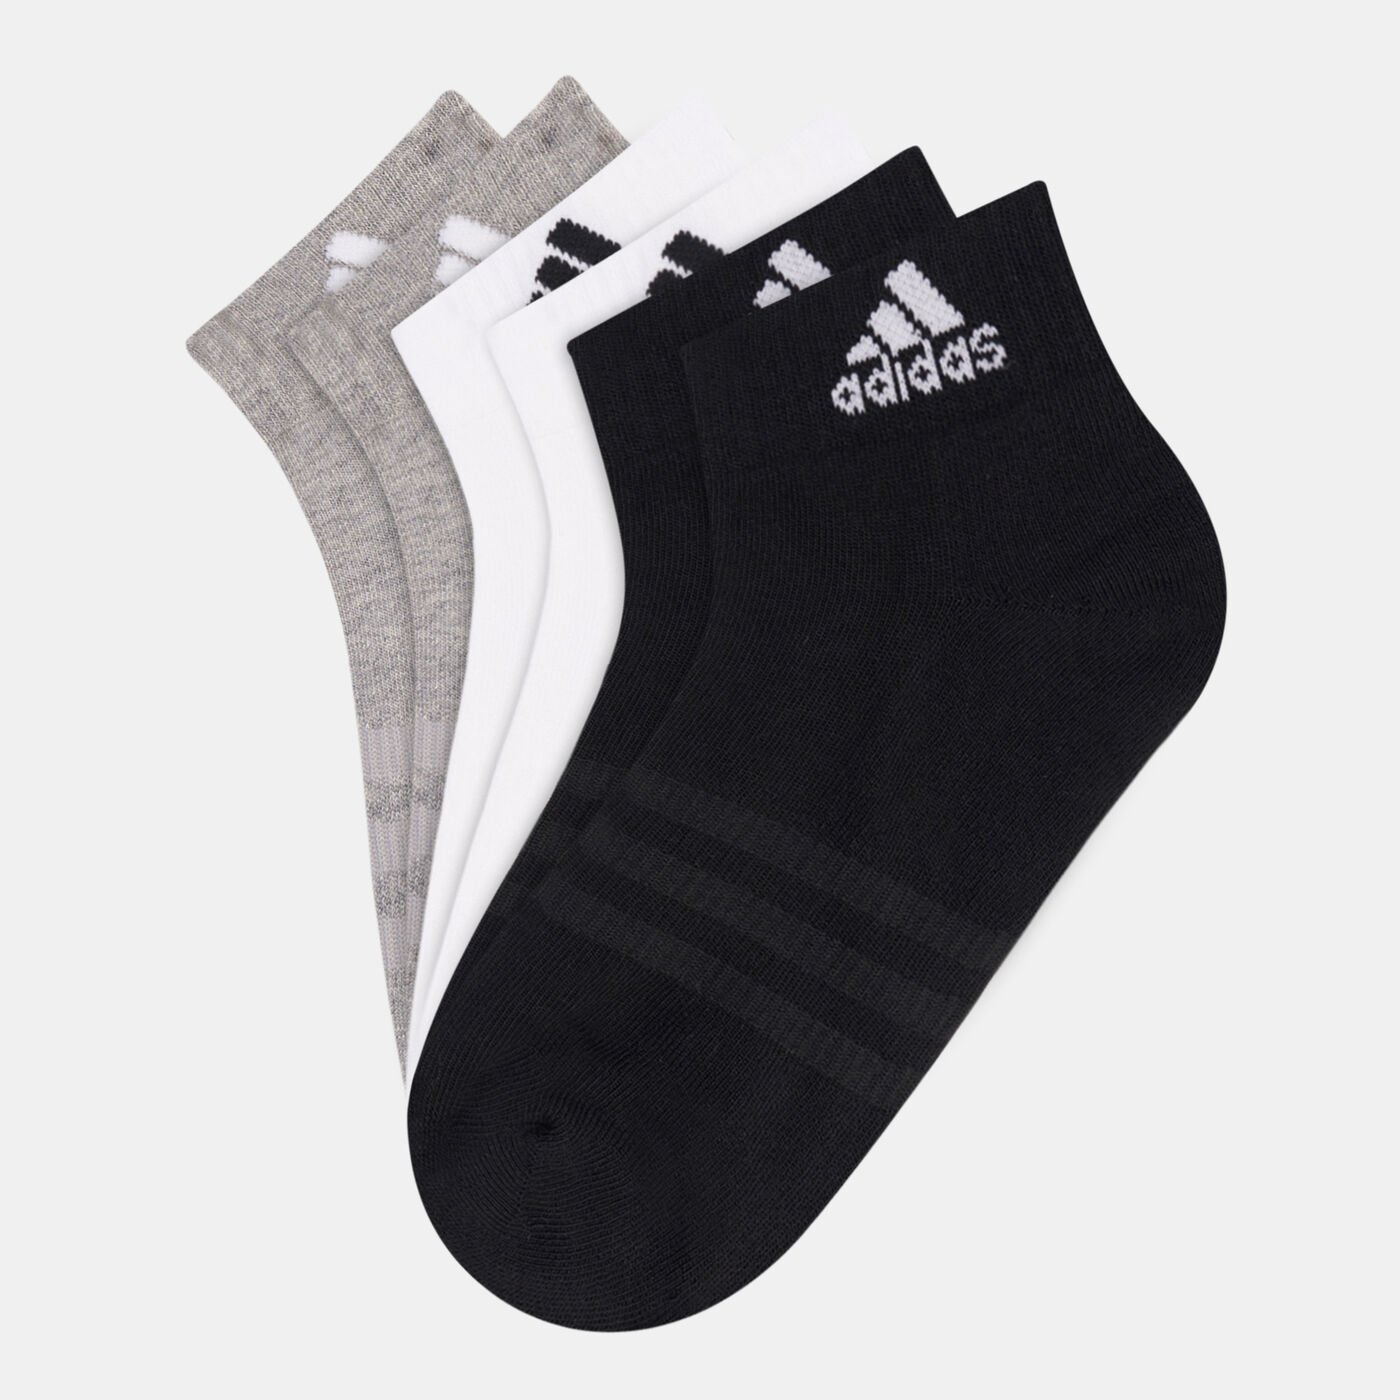 Men's Cushioned Sportswear Ankle Socks (6 Pack)